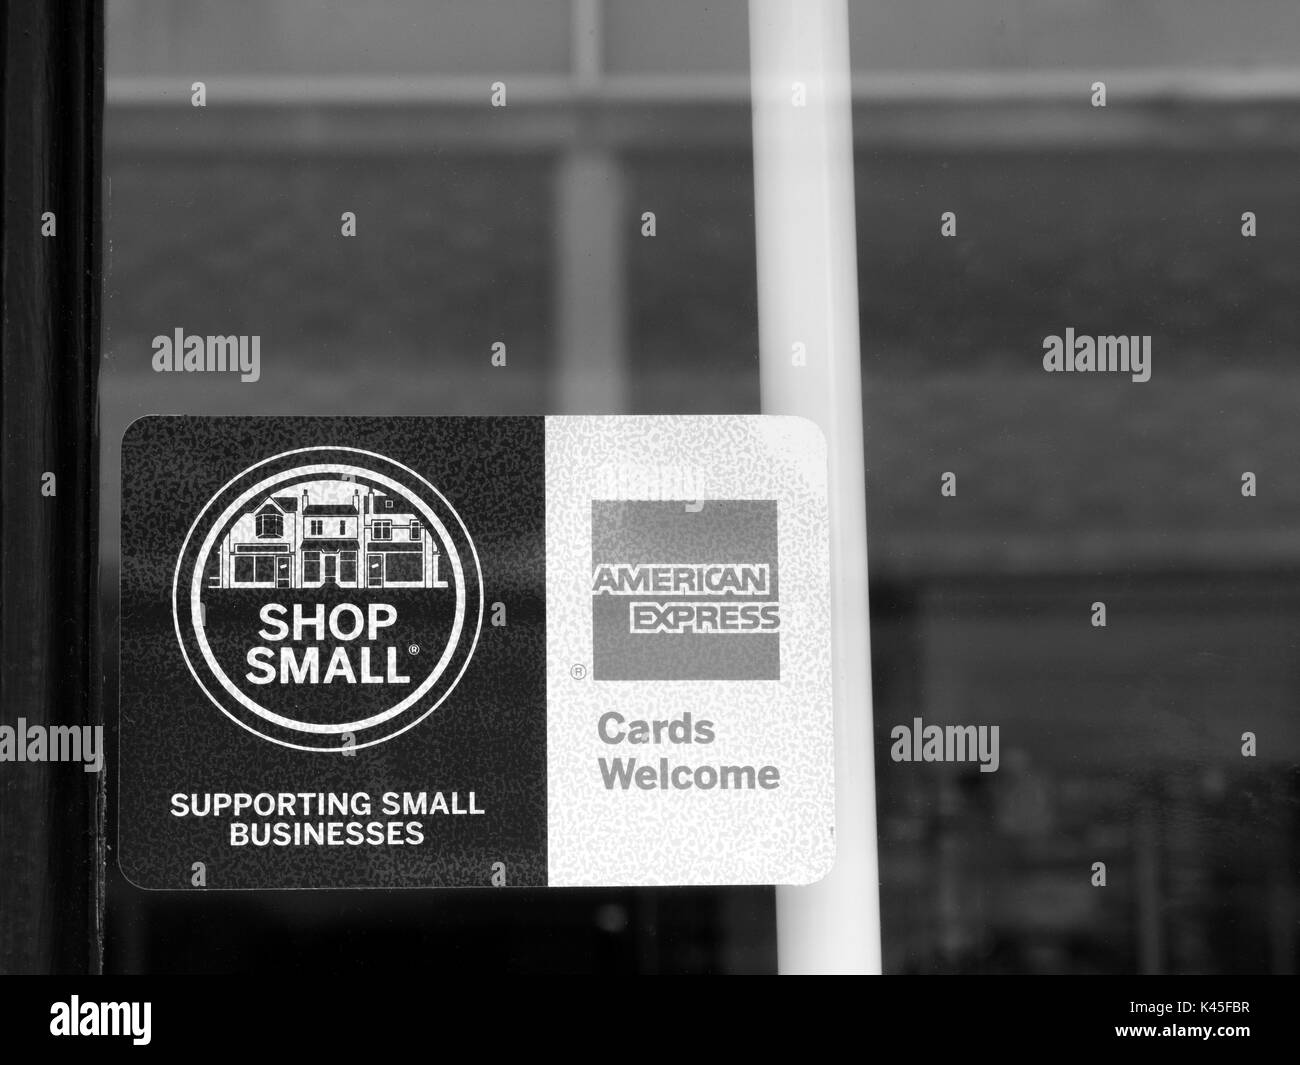 Shop Kleine und American Express Karten Willkommen Anmelden Shop Fenster Stockfoto